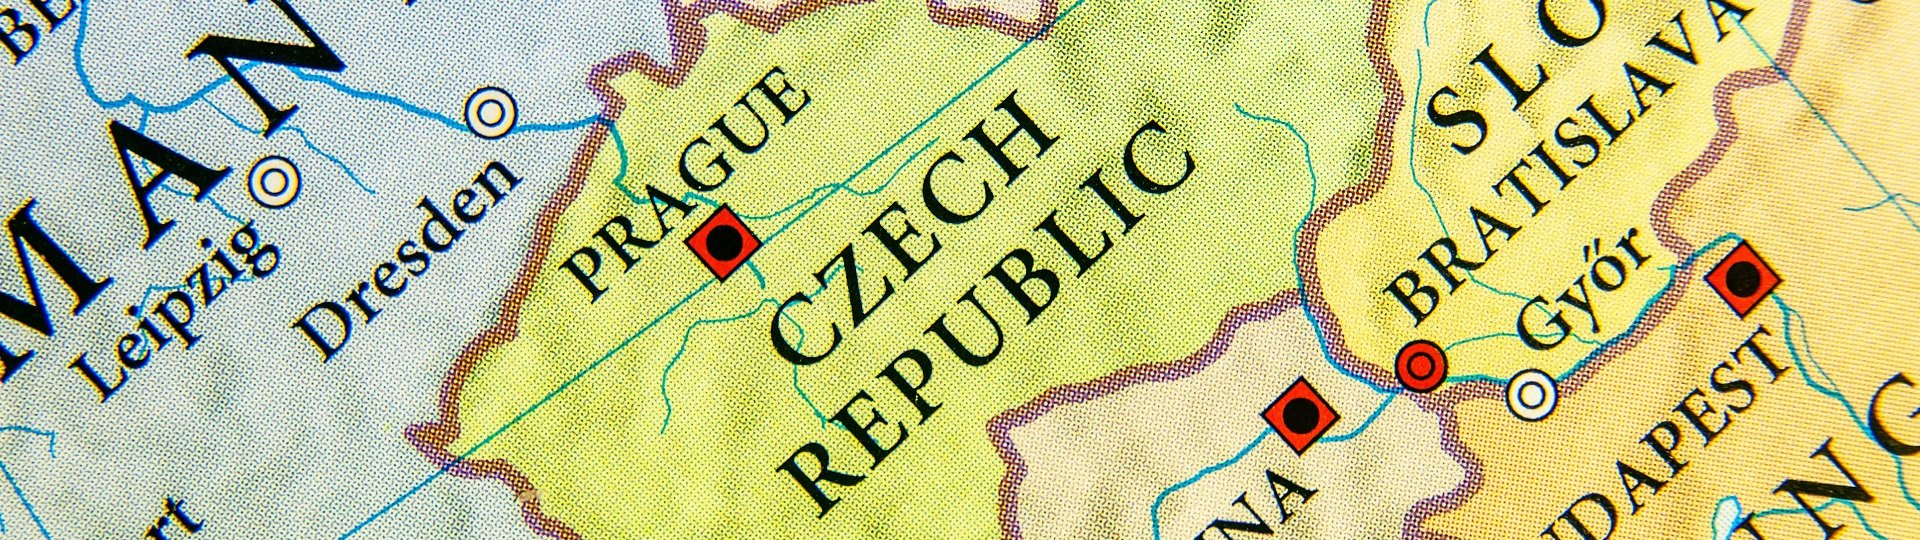 Česká republika profituje ze společného evropského trhu